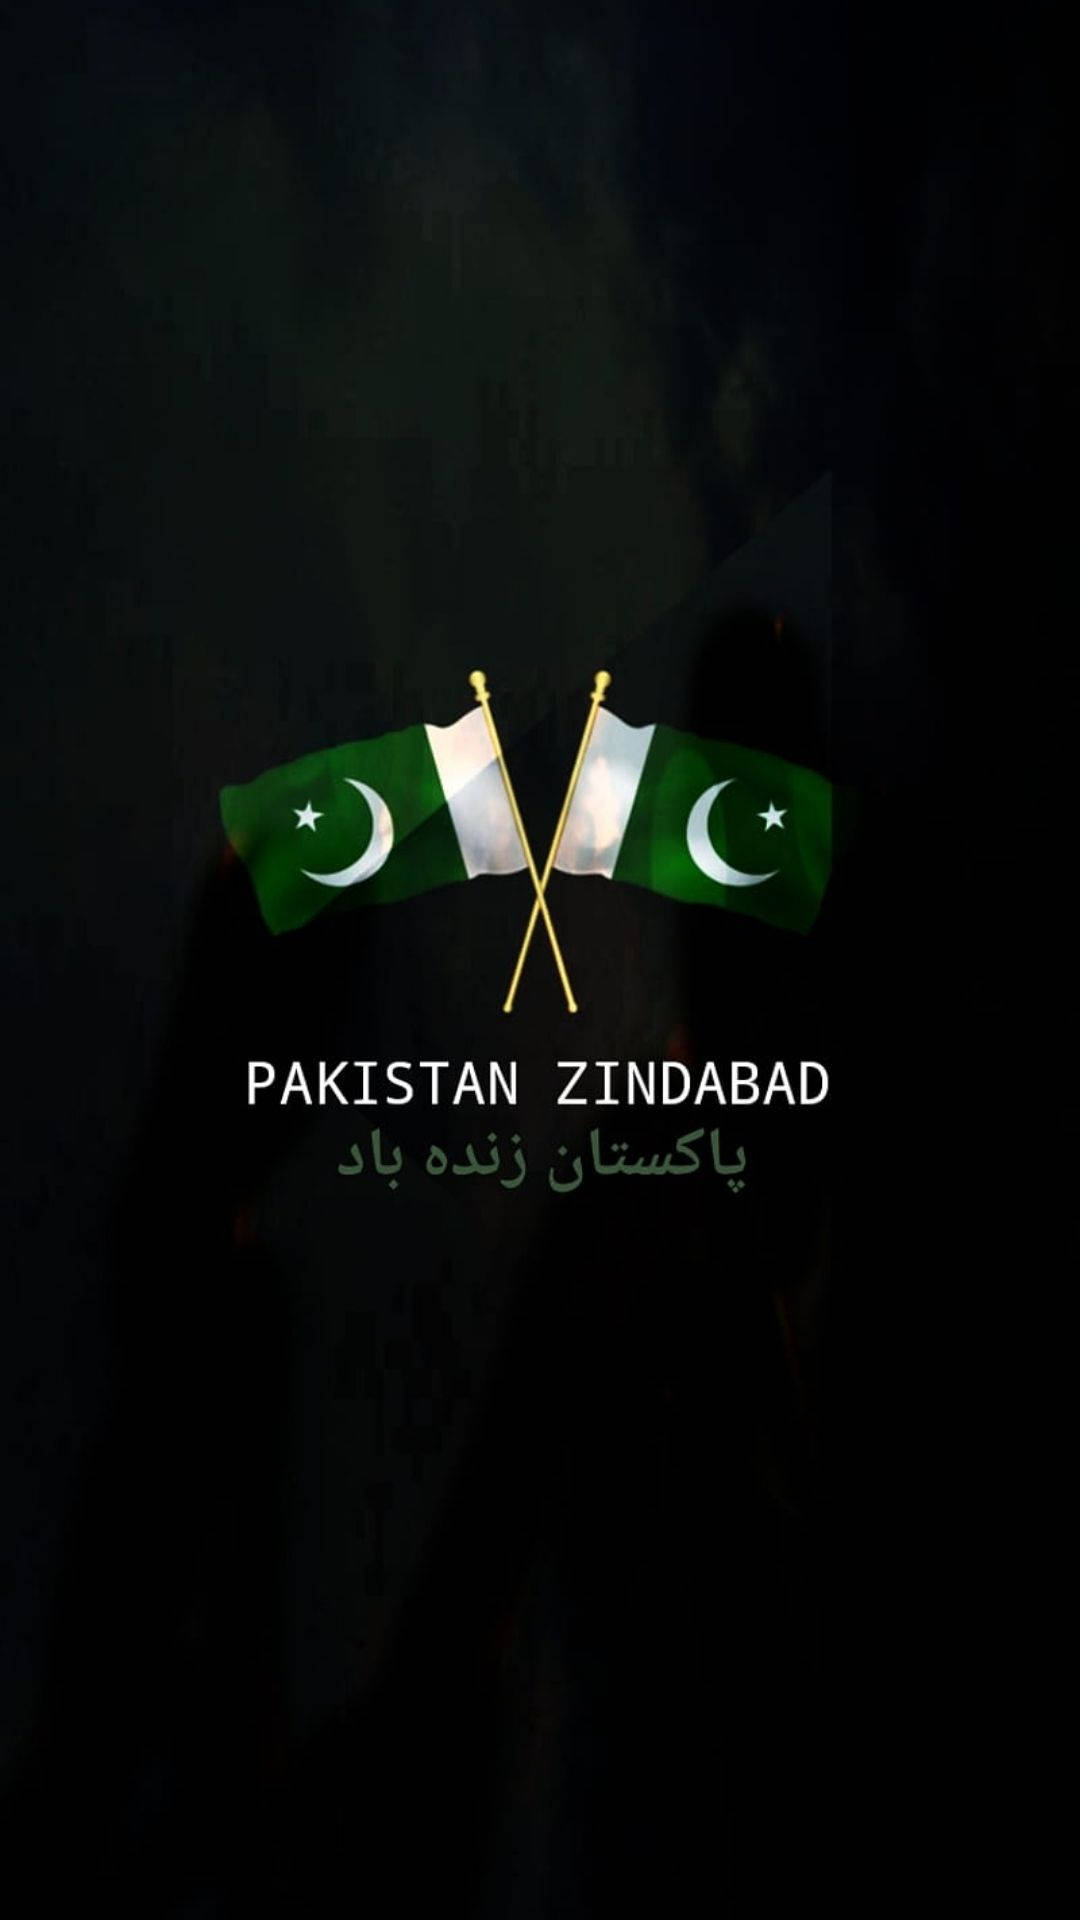 Captivating Display Of Pakistan Zindabad Flaglets Background